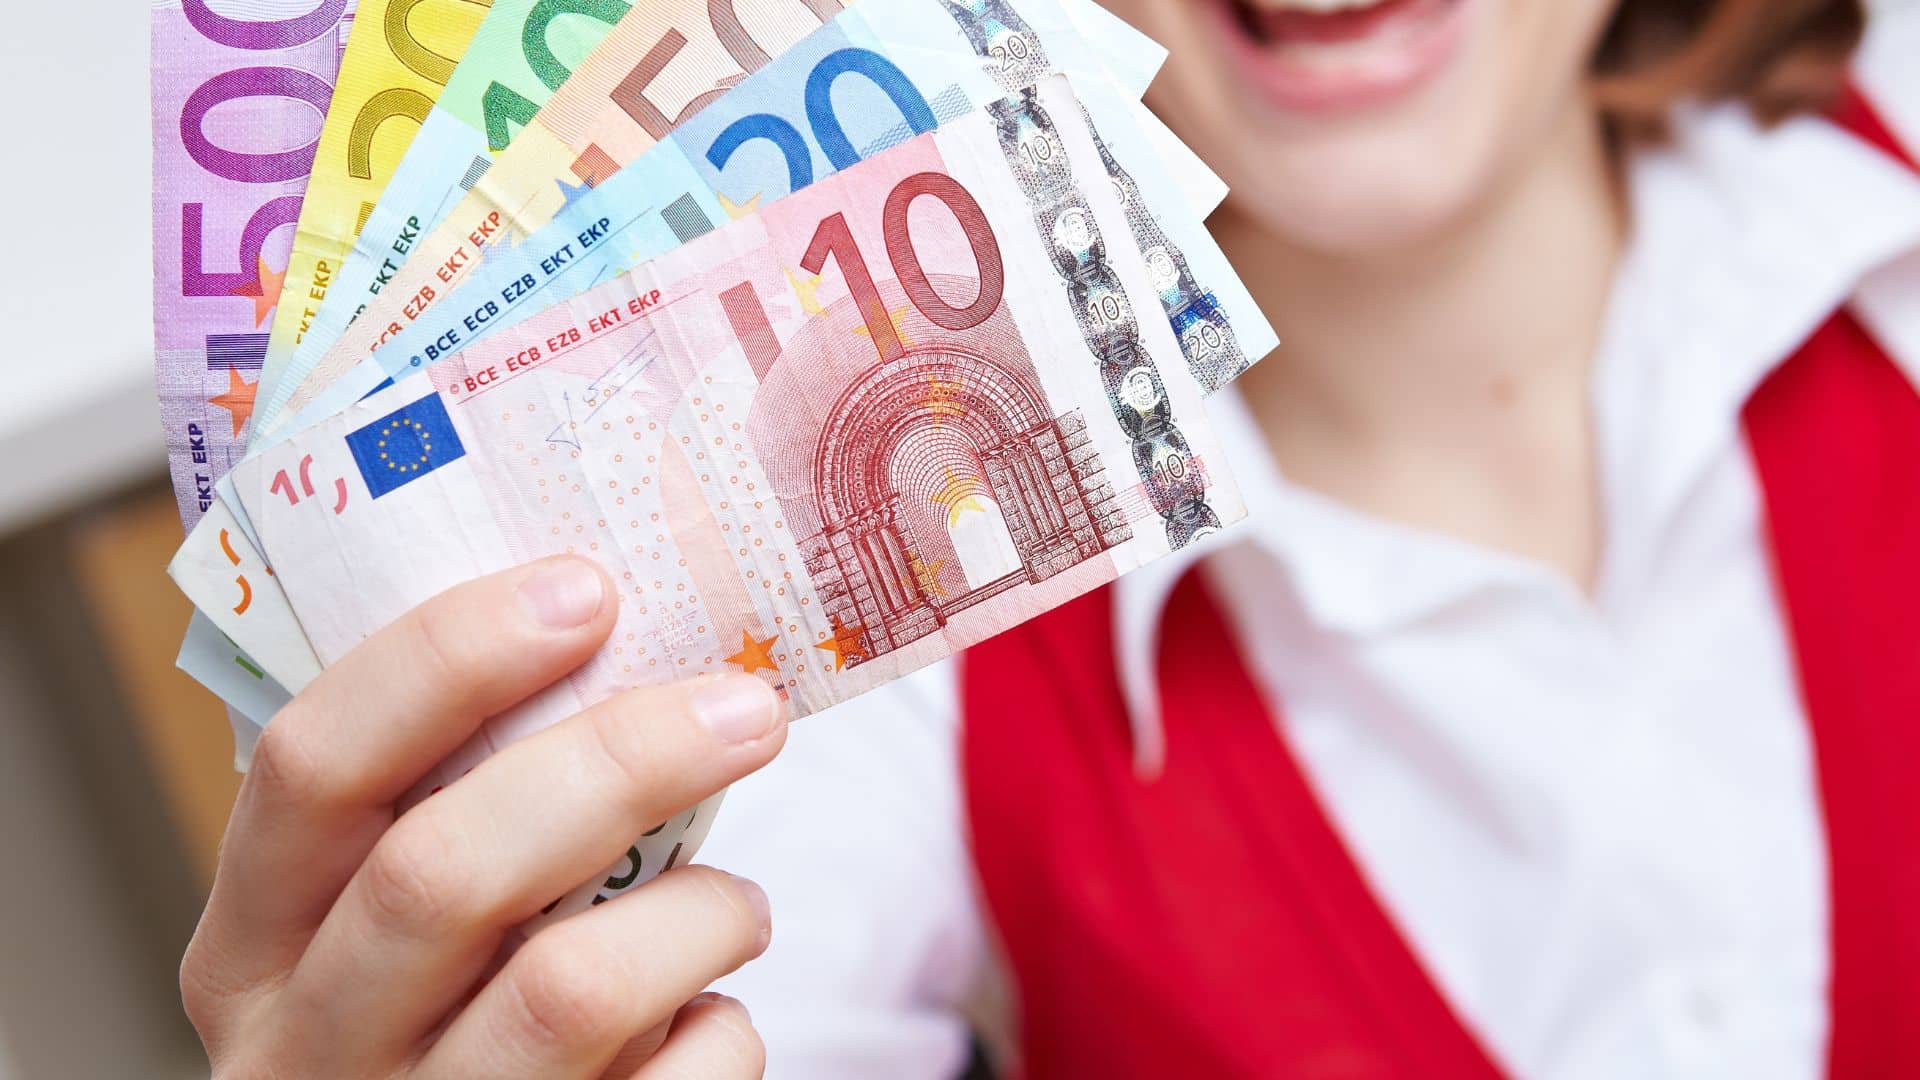 100 Euro Ausgleichszahlung für alle